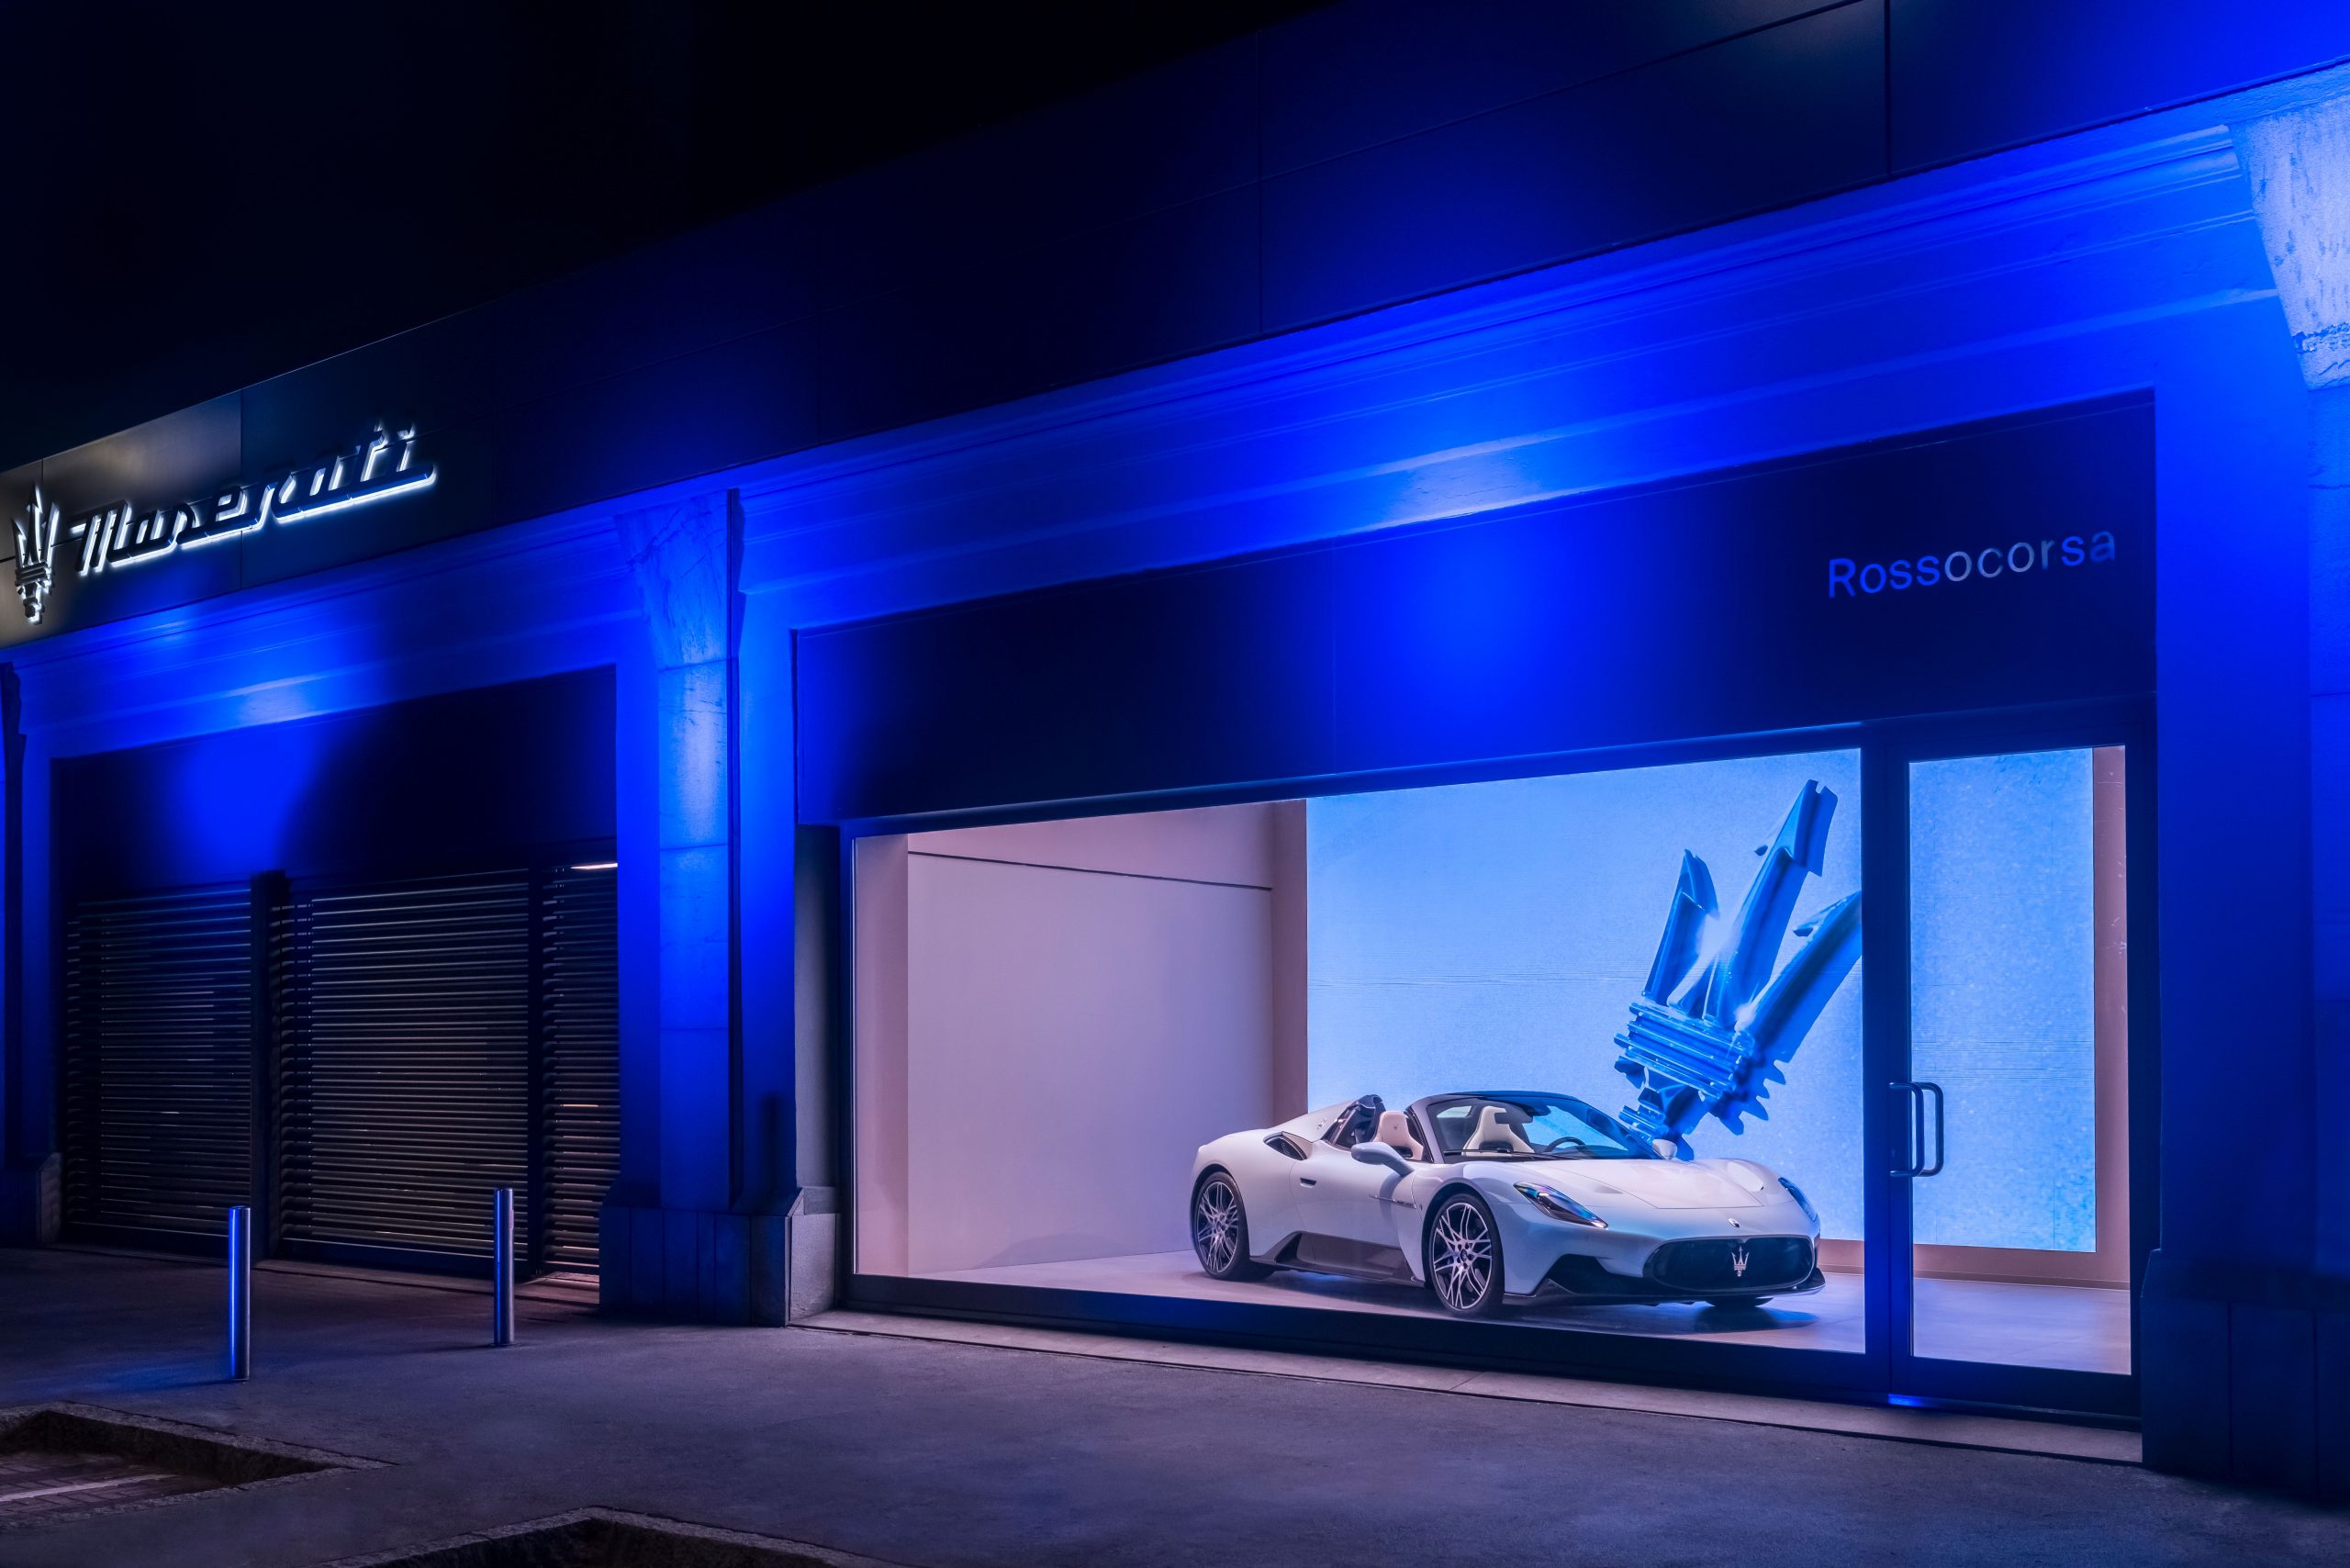 Maserati debutta con il nuovo retail concept “sartorial officina” nel cuore di Milano